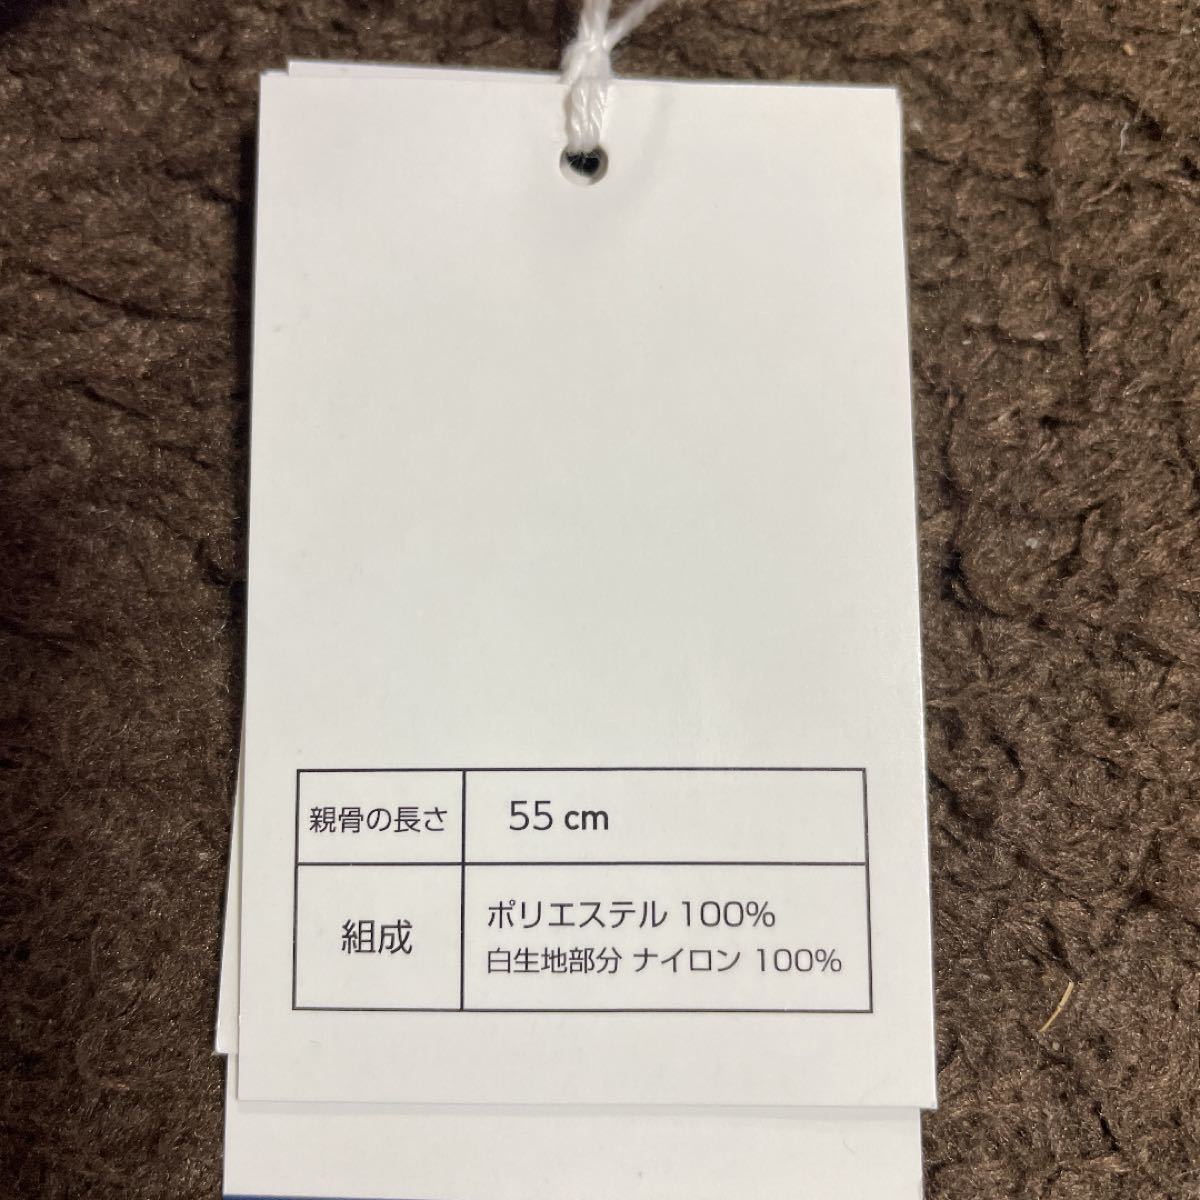 東京2020 折りたたみ傘2本&レインポンチョ